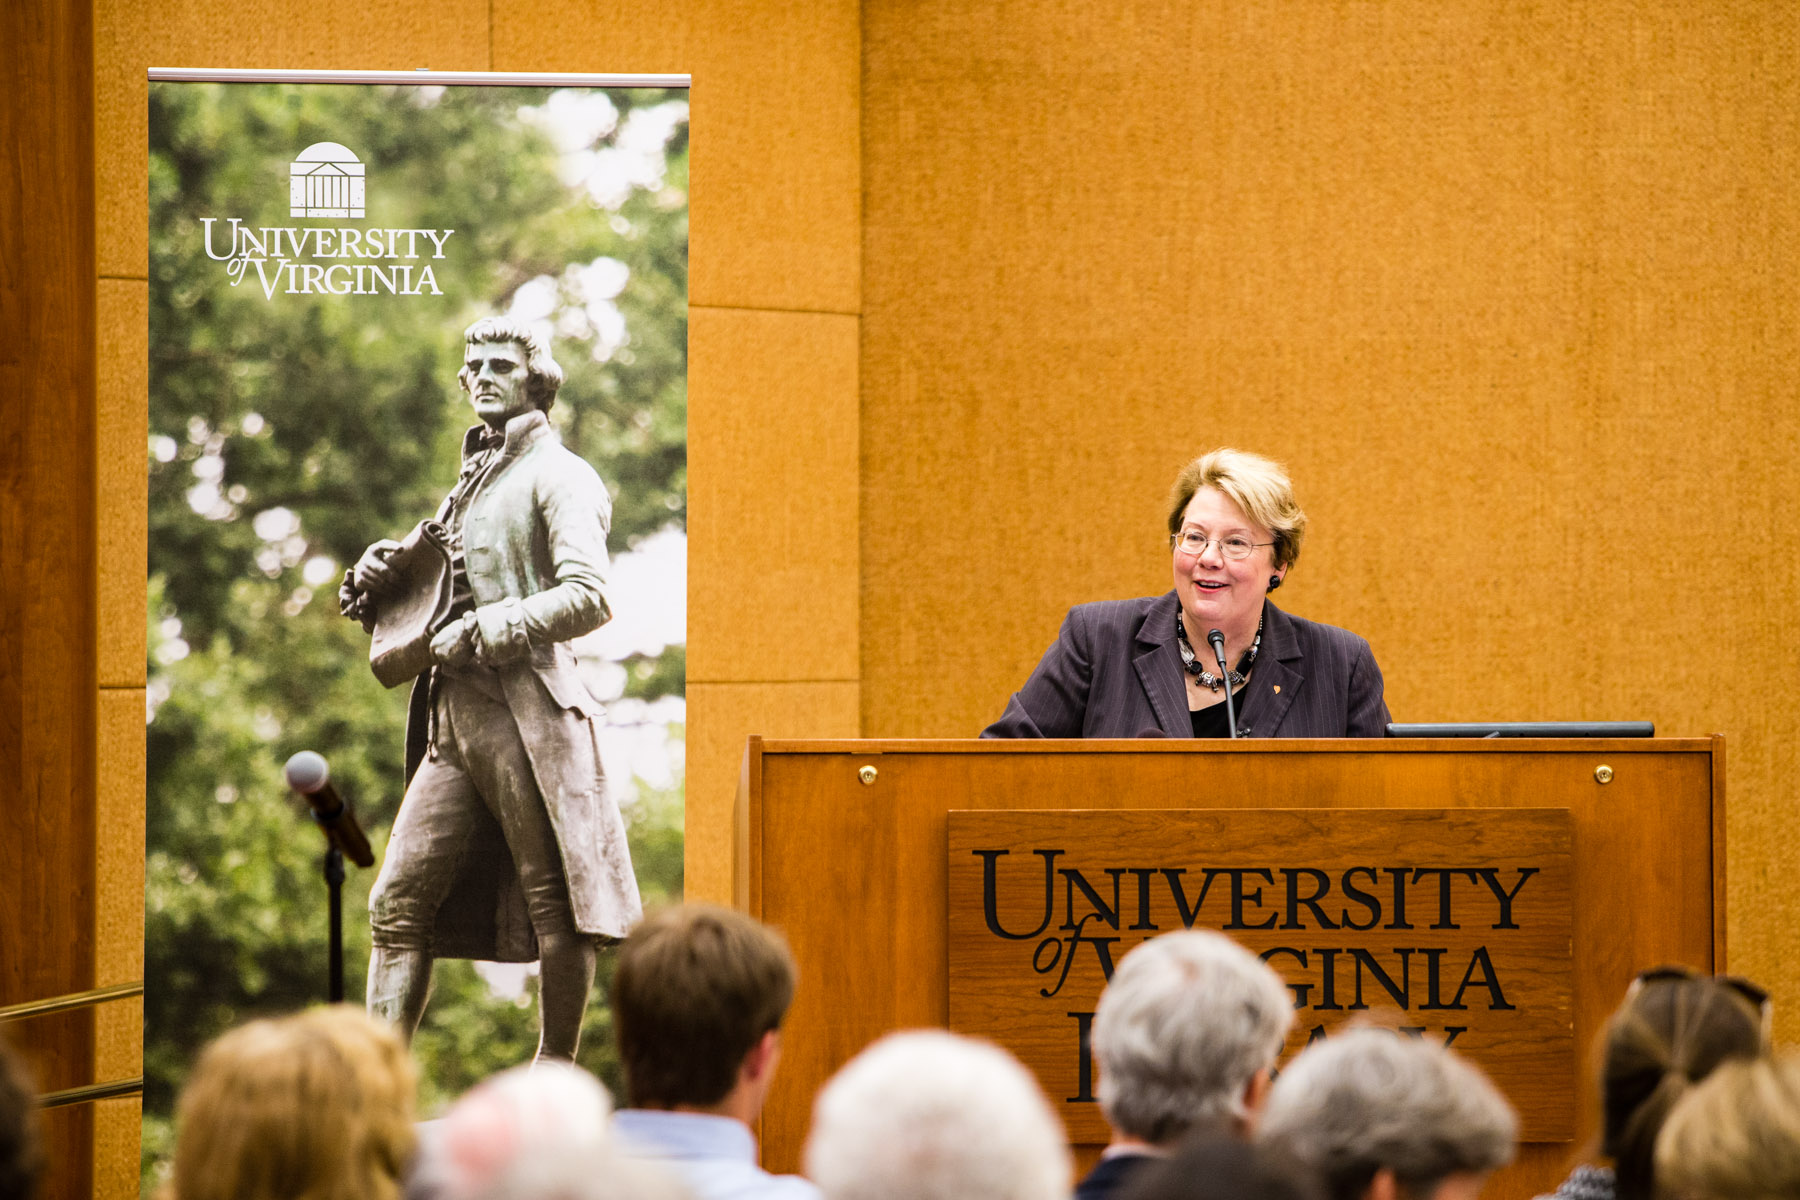 U.Va. President Teresa A. Sullivan speaking at a podium